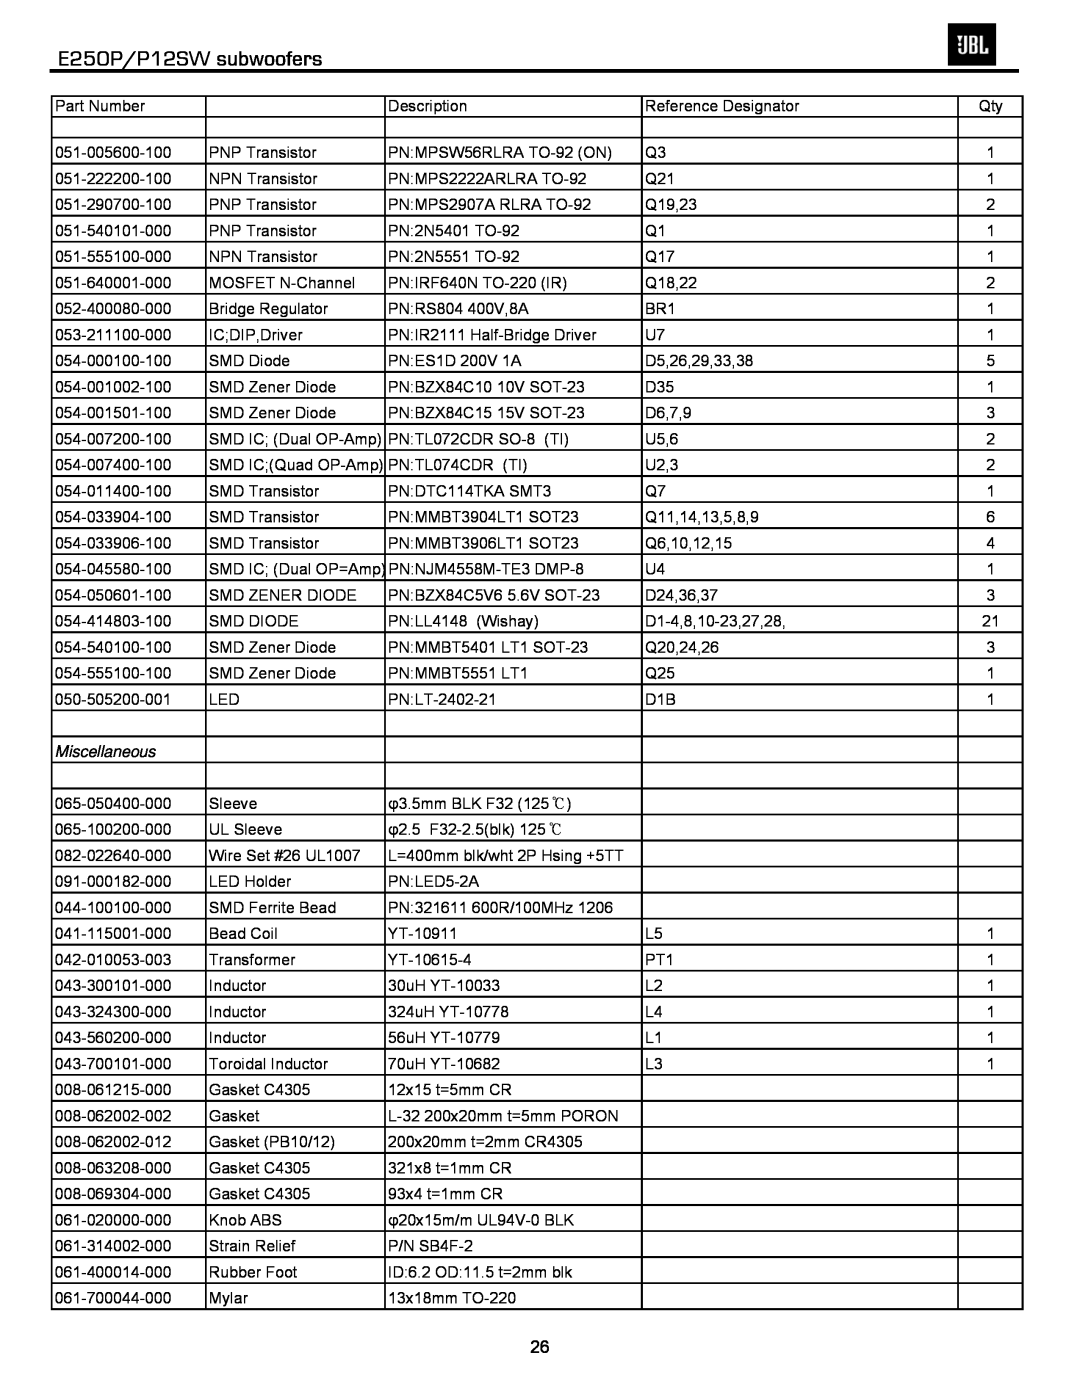 JBL service manual E250P/P12SW subwoofers, Part Number, Miscellaneous 